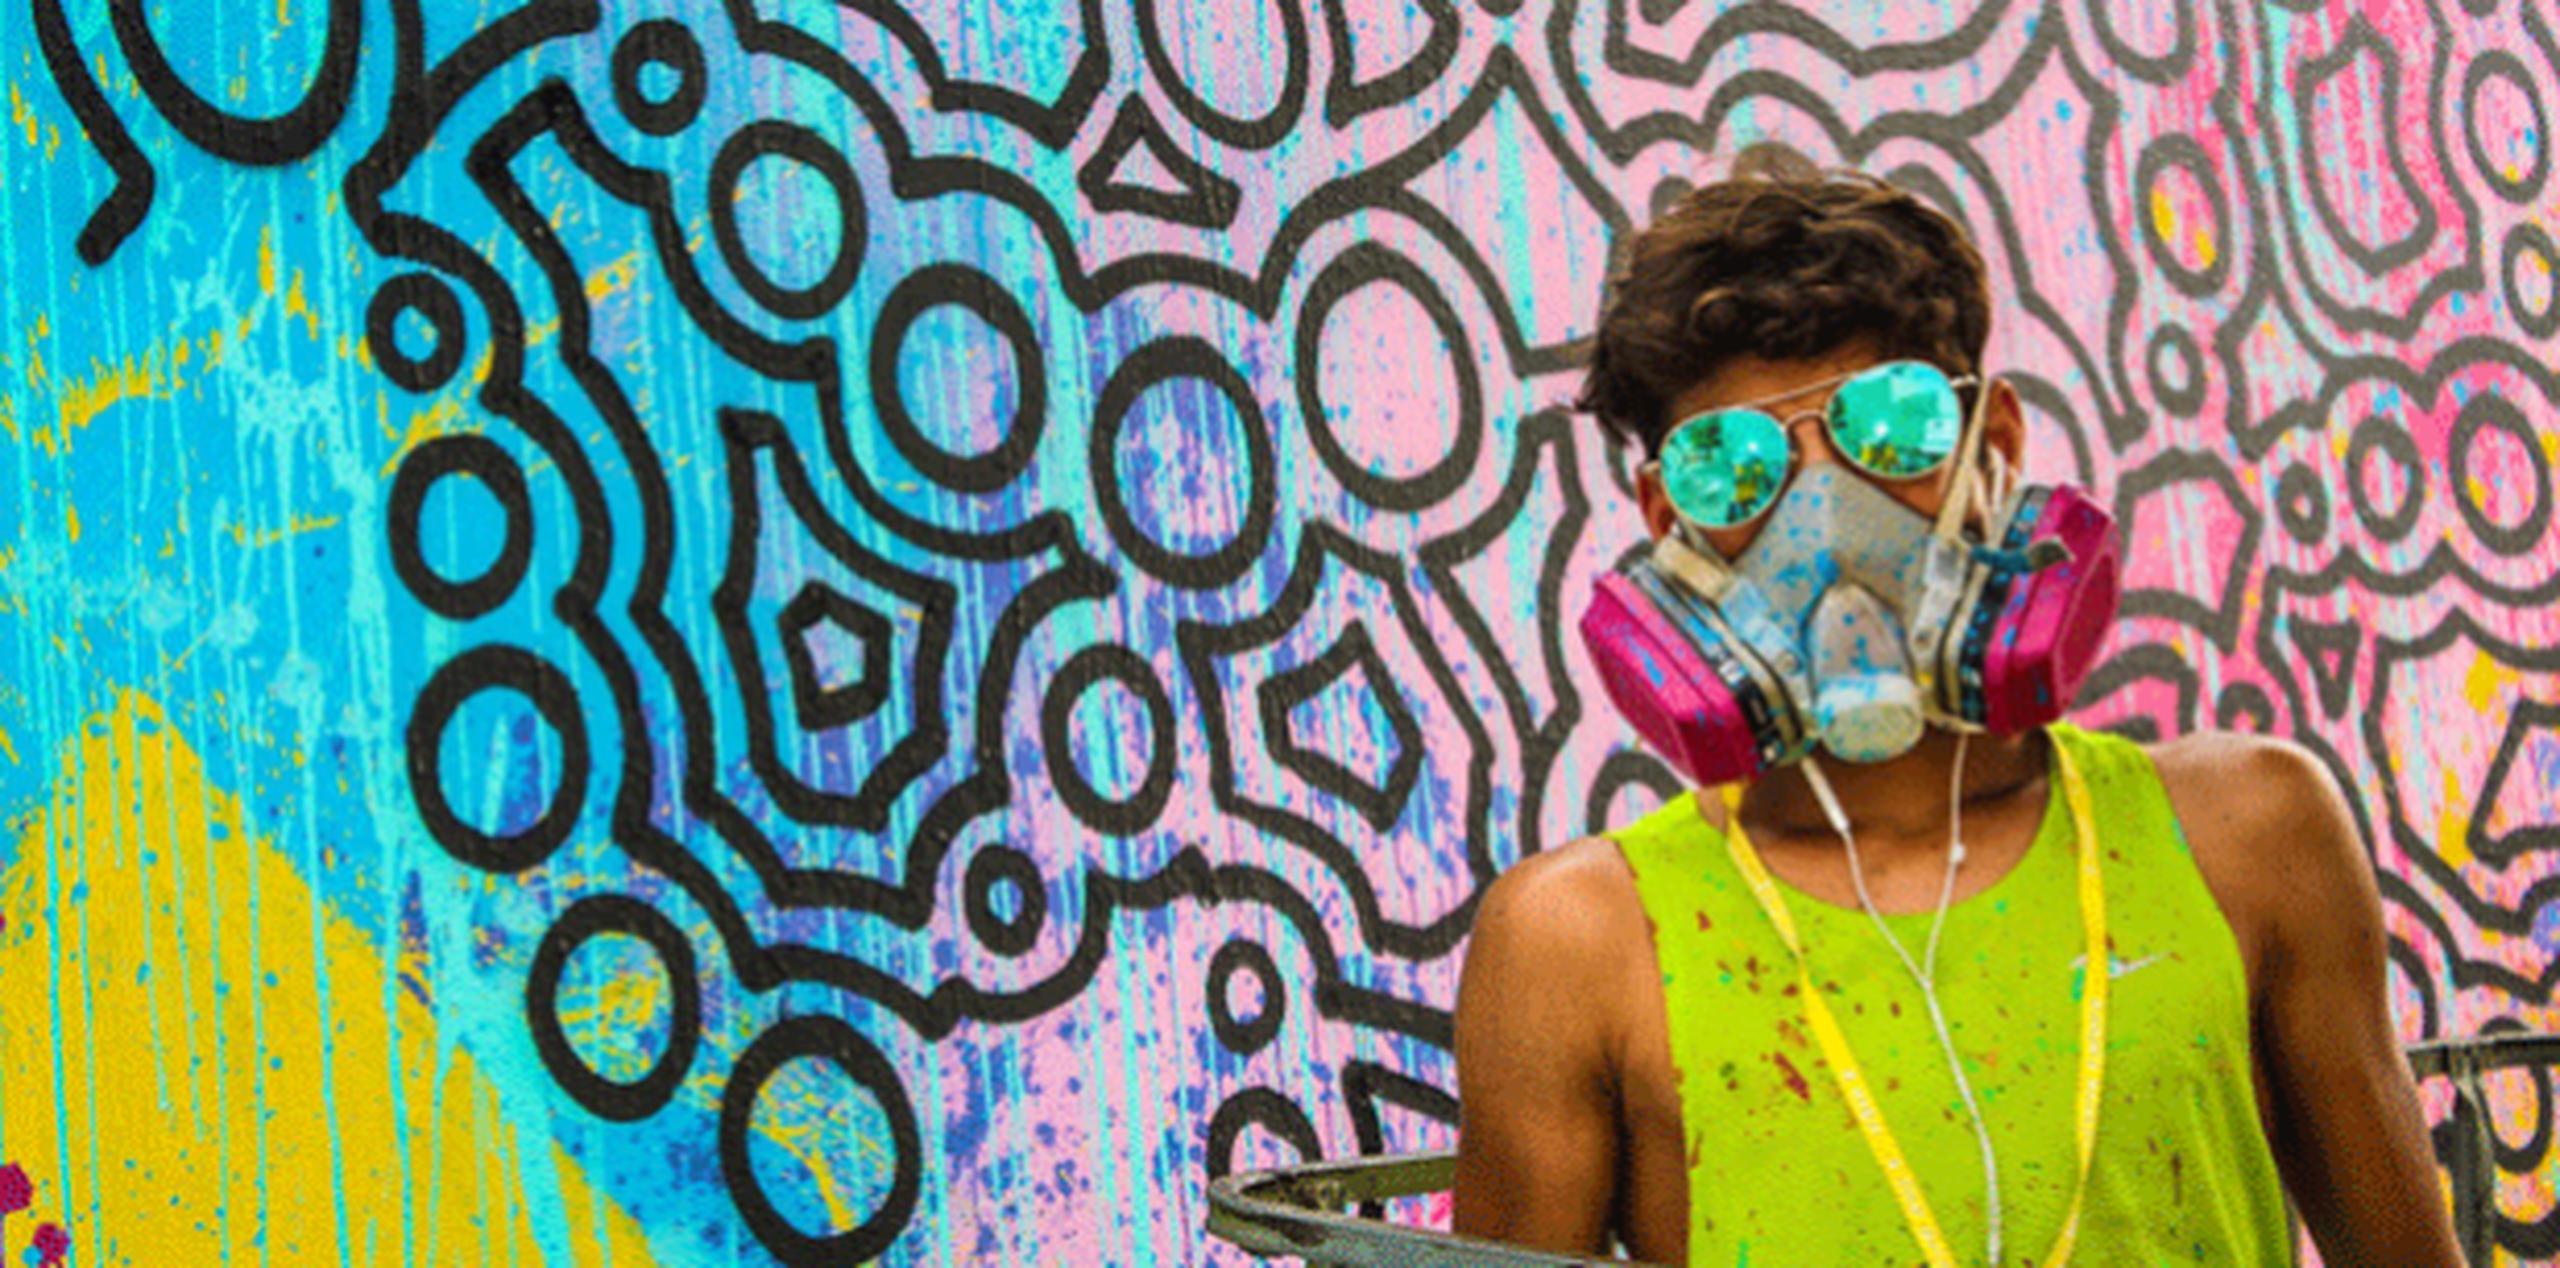 El artista ha participado de los colectivos de arte urbano como Santurce es Ley, Culebra es Ley y Yacromatic.  (SUMINISTRADAS)